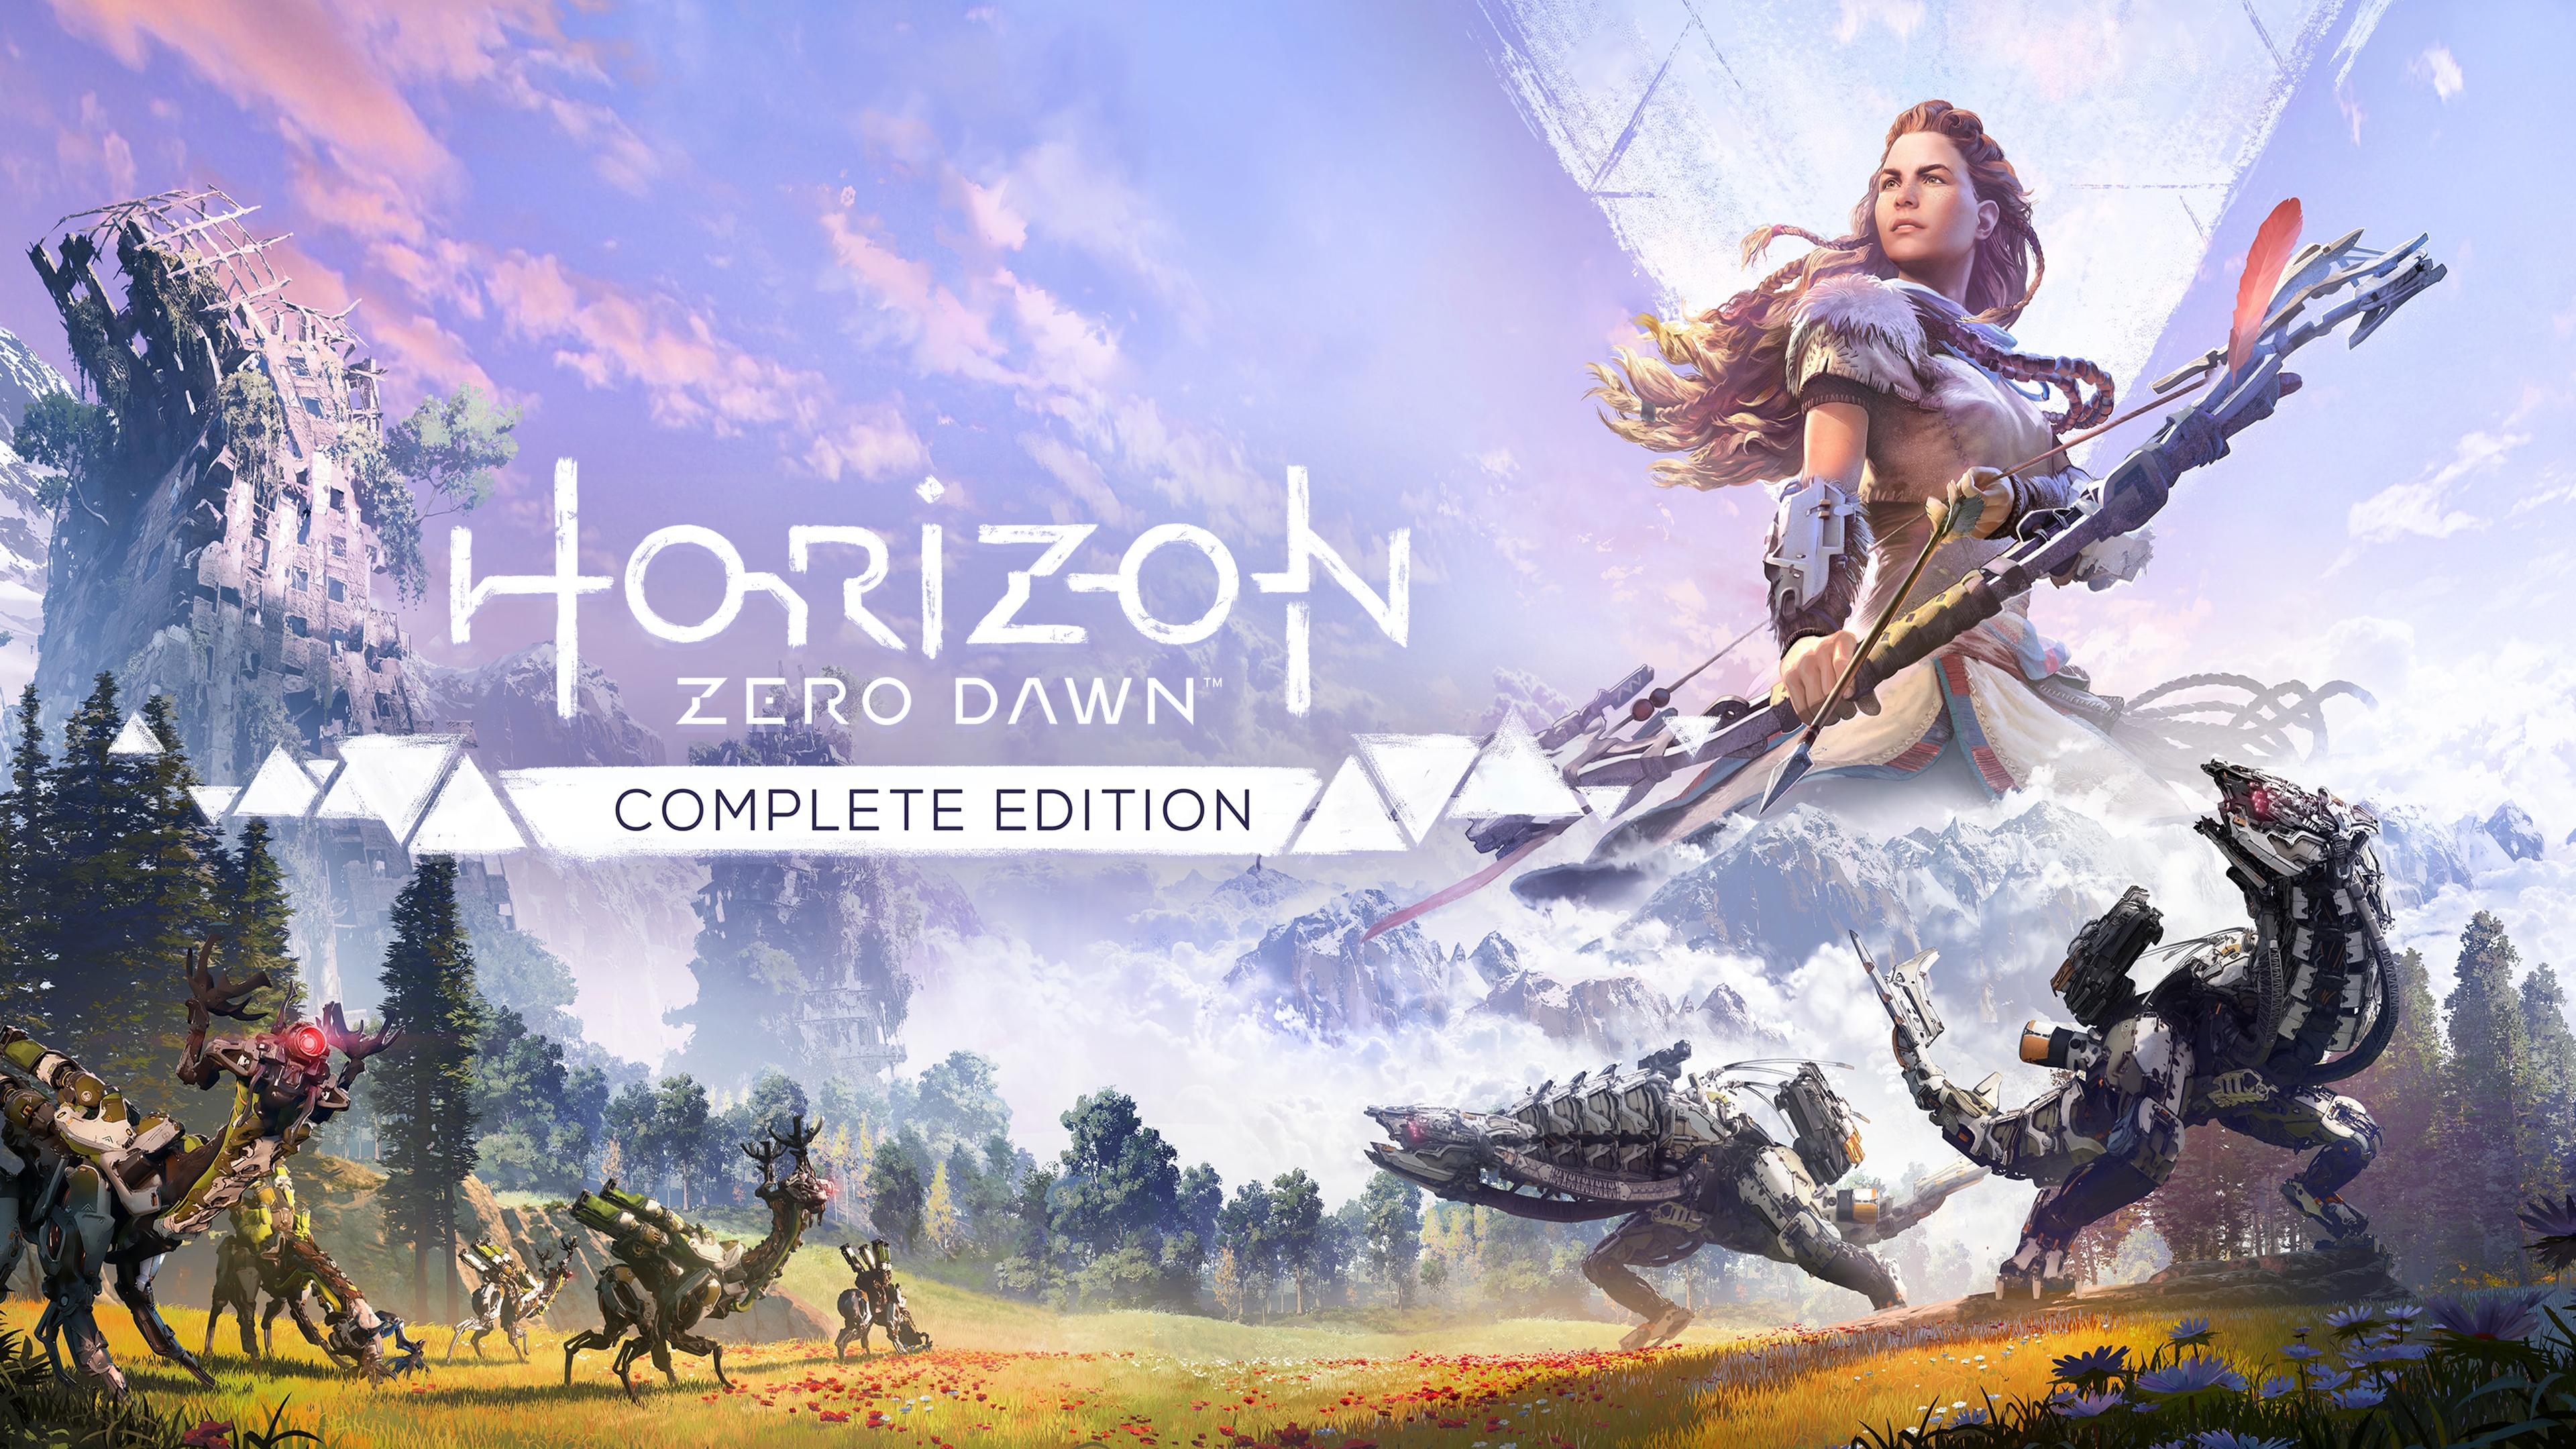 Horizon Zero Dawn - Epic High Action Combat & Free Roam Gameplay 4K 